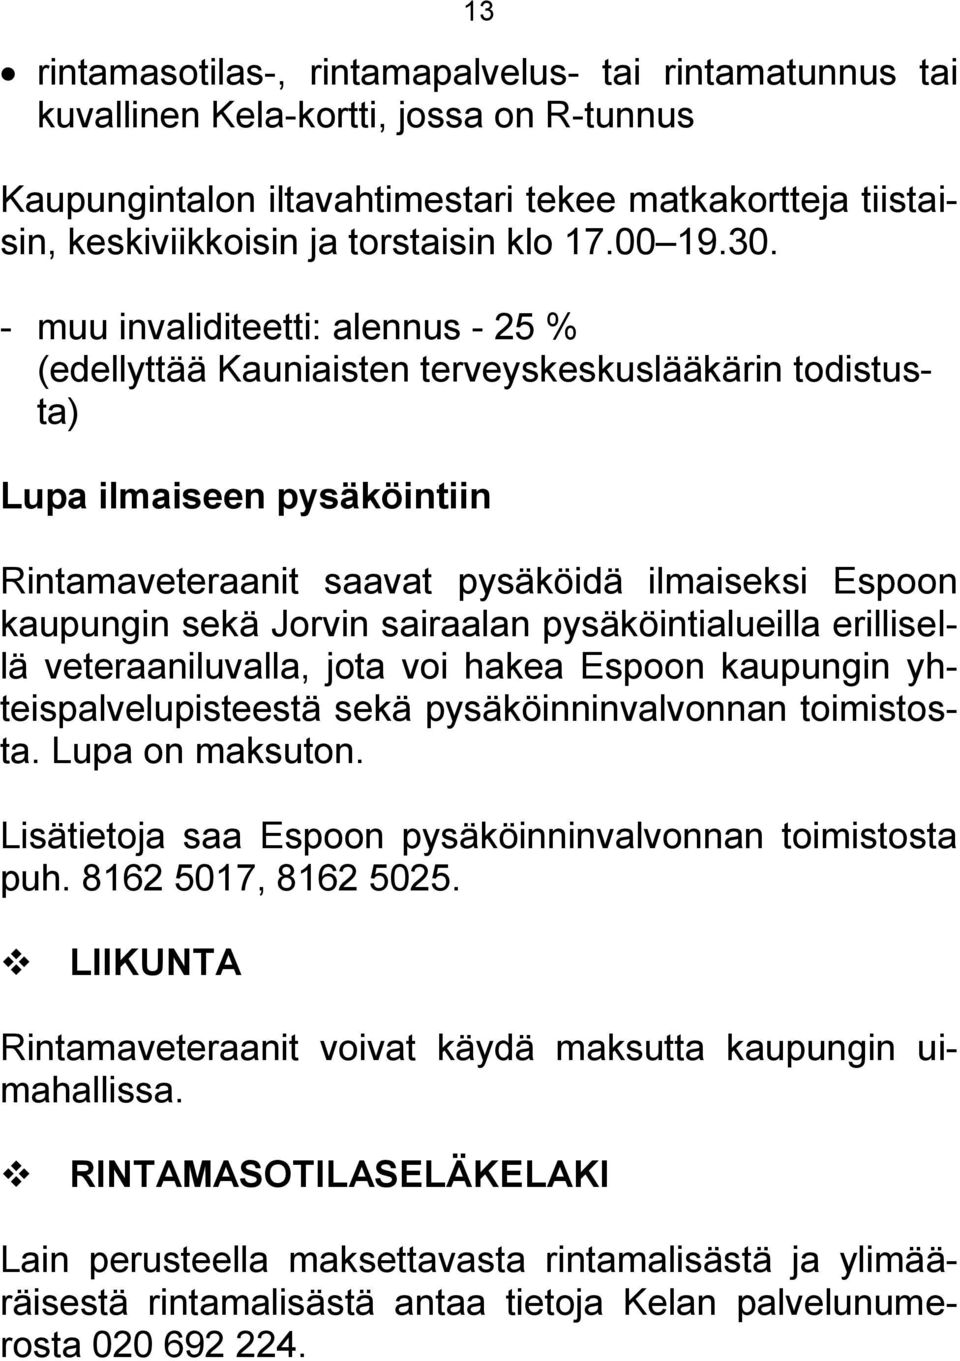 - muu invaliditeetti: alennus - 25 % (edellyttää Kauniaisten terveyskeskuslääkärin todistusta) Lupa ilmaiseen pysäköintiin Rintamaveteraanit saavat pysäköidä ilmaiseksi Espoon kaupungin sekä Jorvin